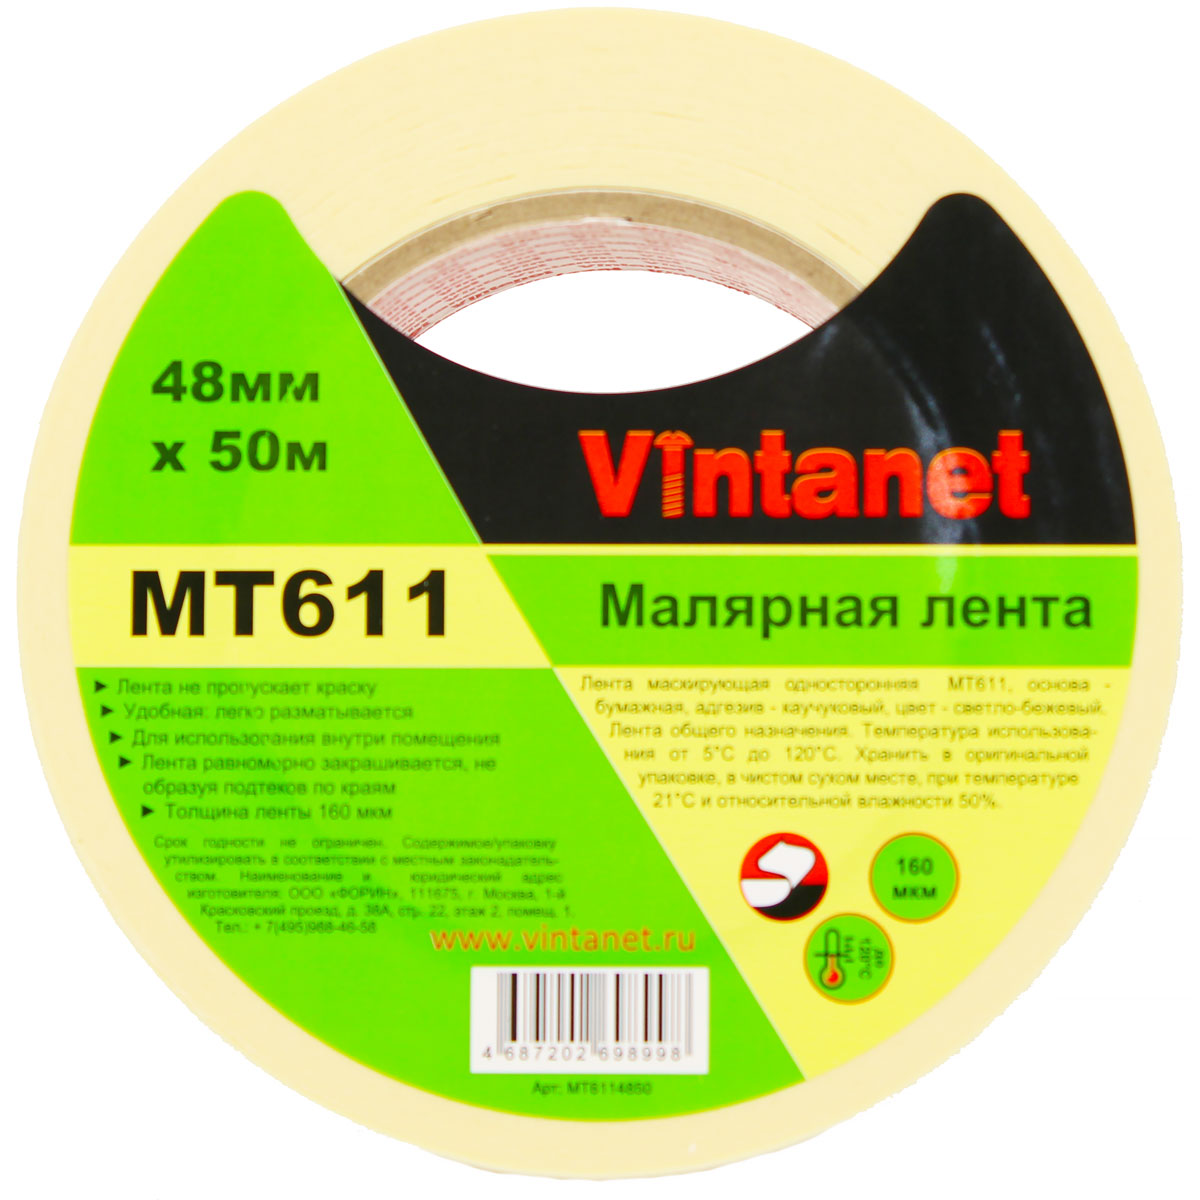 Лента малярная высокотемпературная Vintanet MT611, 120 С, 160 мкм, 48мм х 50м, MT6114850 малярная лента для деликатных поверхностей rollingdog